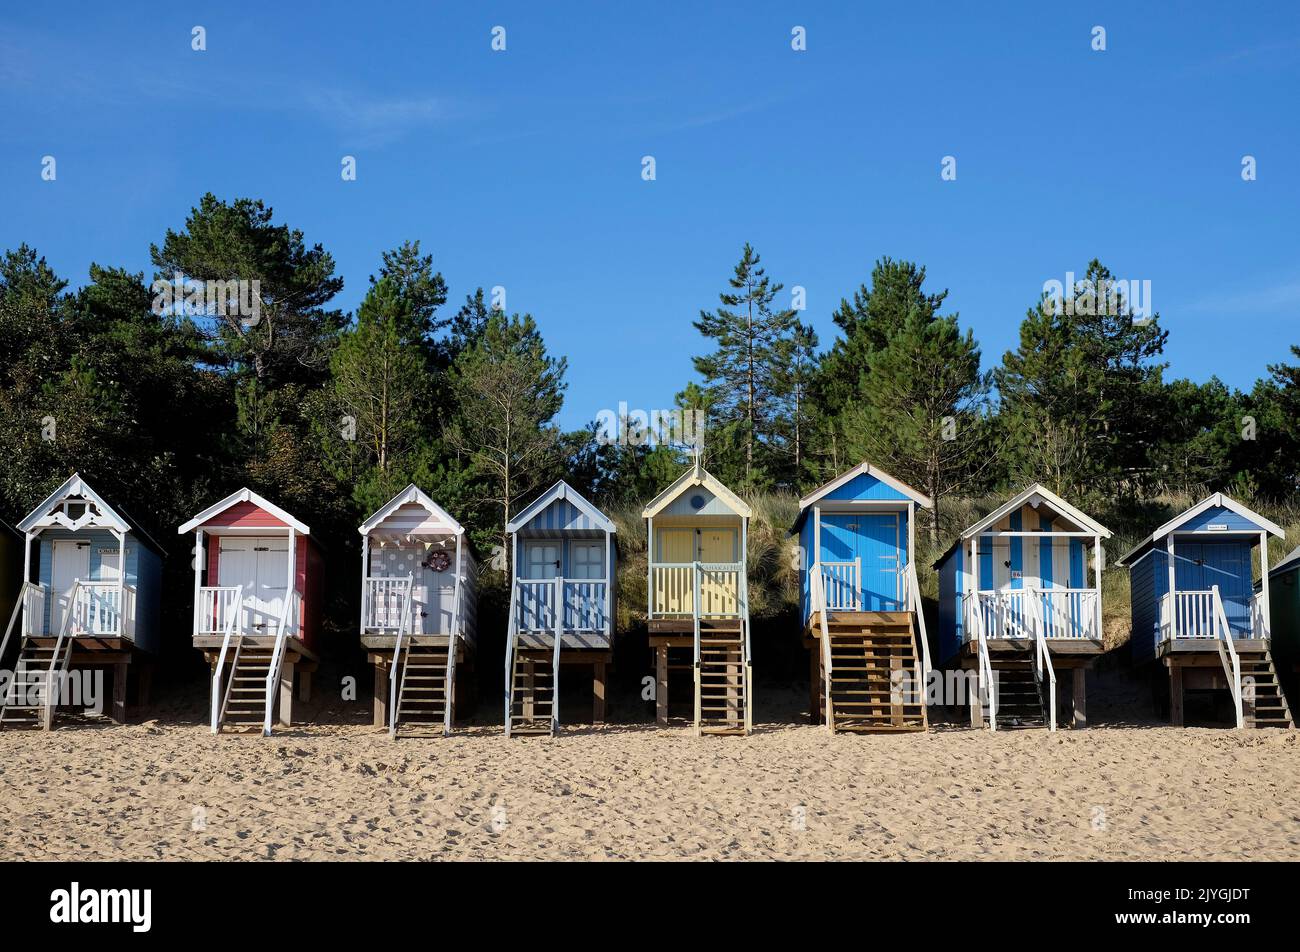 huttes de plage colorées à wells-près-de-la-mer, nord de norfolk, angleterre Banque D'Images